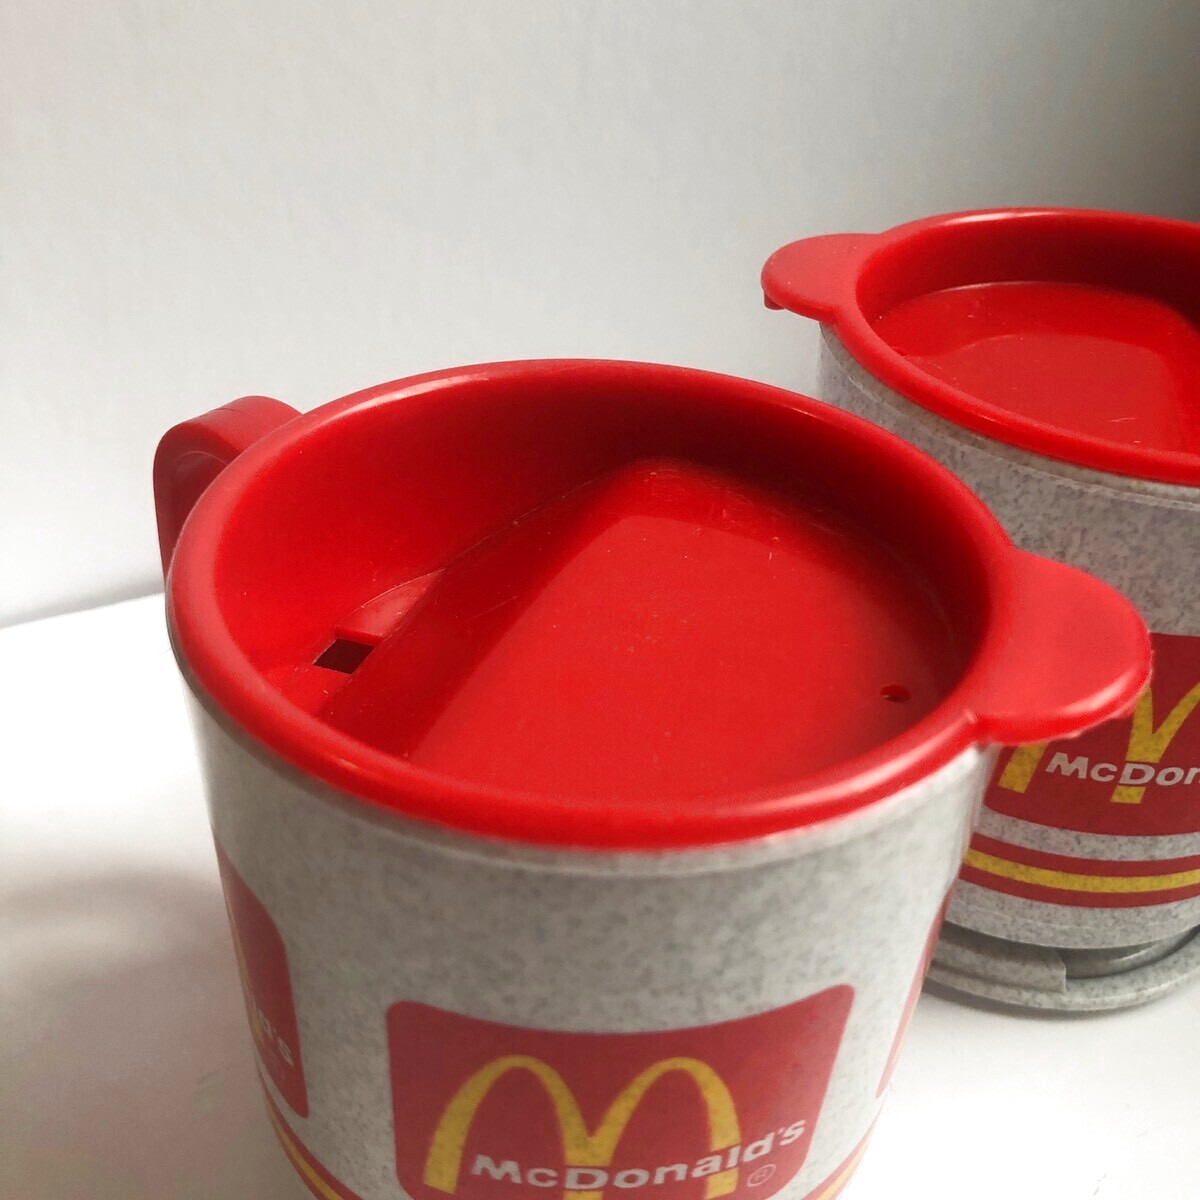 Vintage Whirley McDonald's Travel Mug ビンテージ アメリカ雑貨 マクドナルド 回転式トラベルマグカップ 2個セット  Snowdrop Postcards アンティークカード専門店